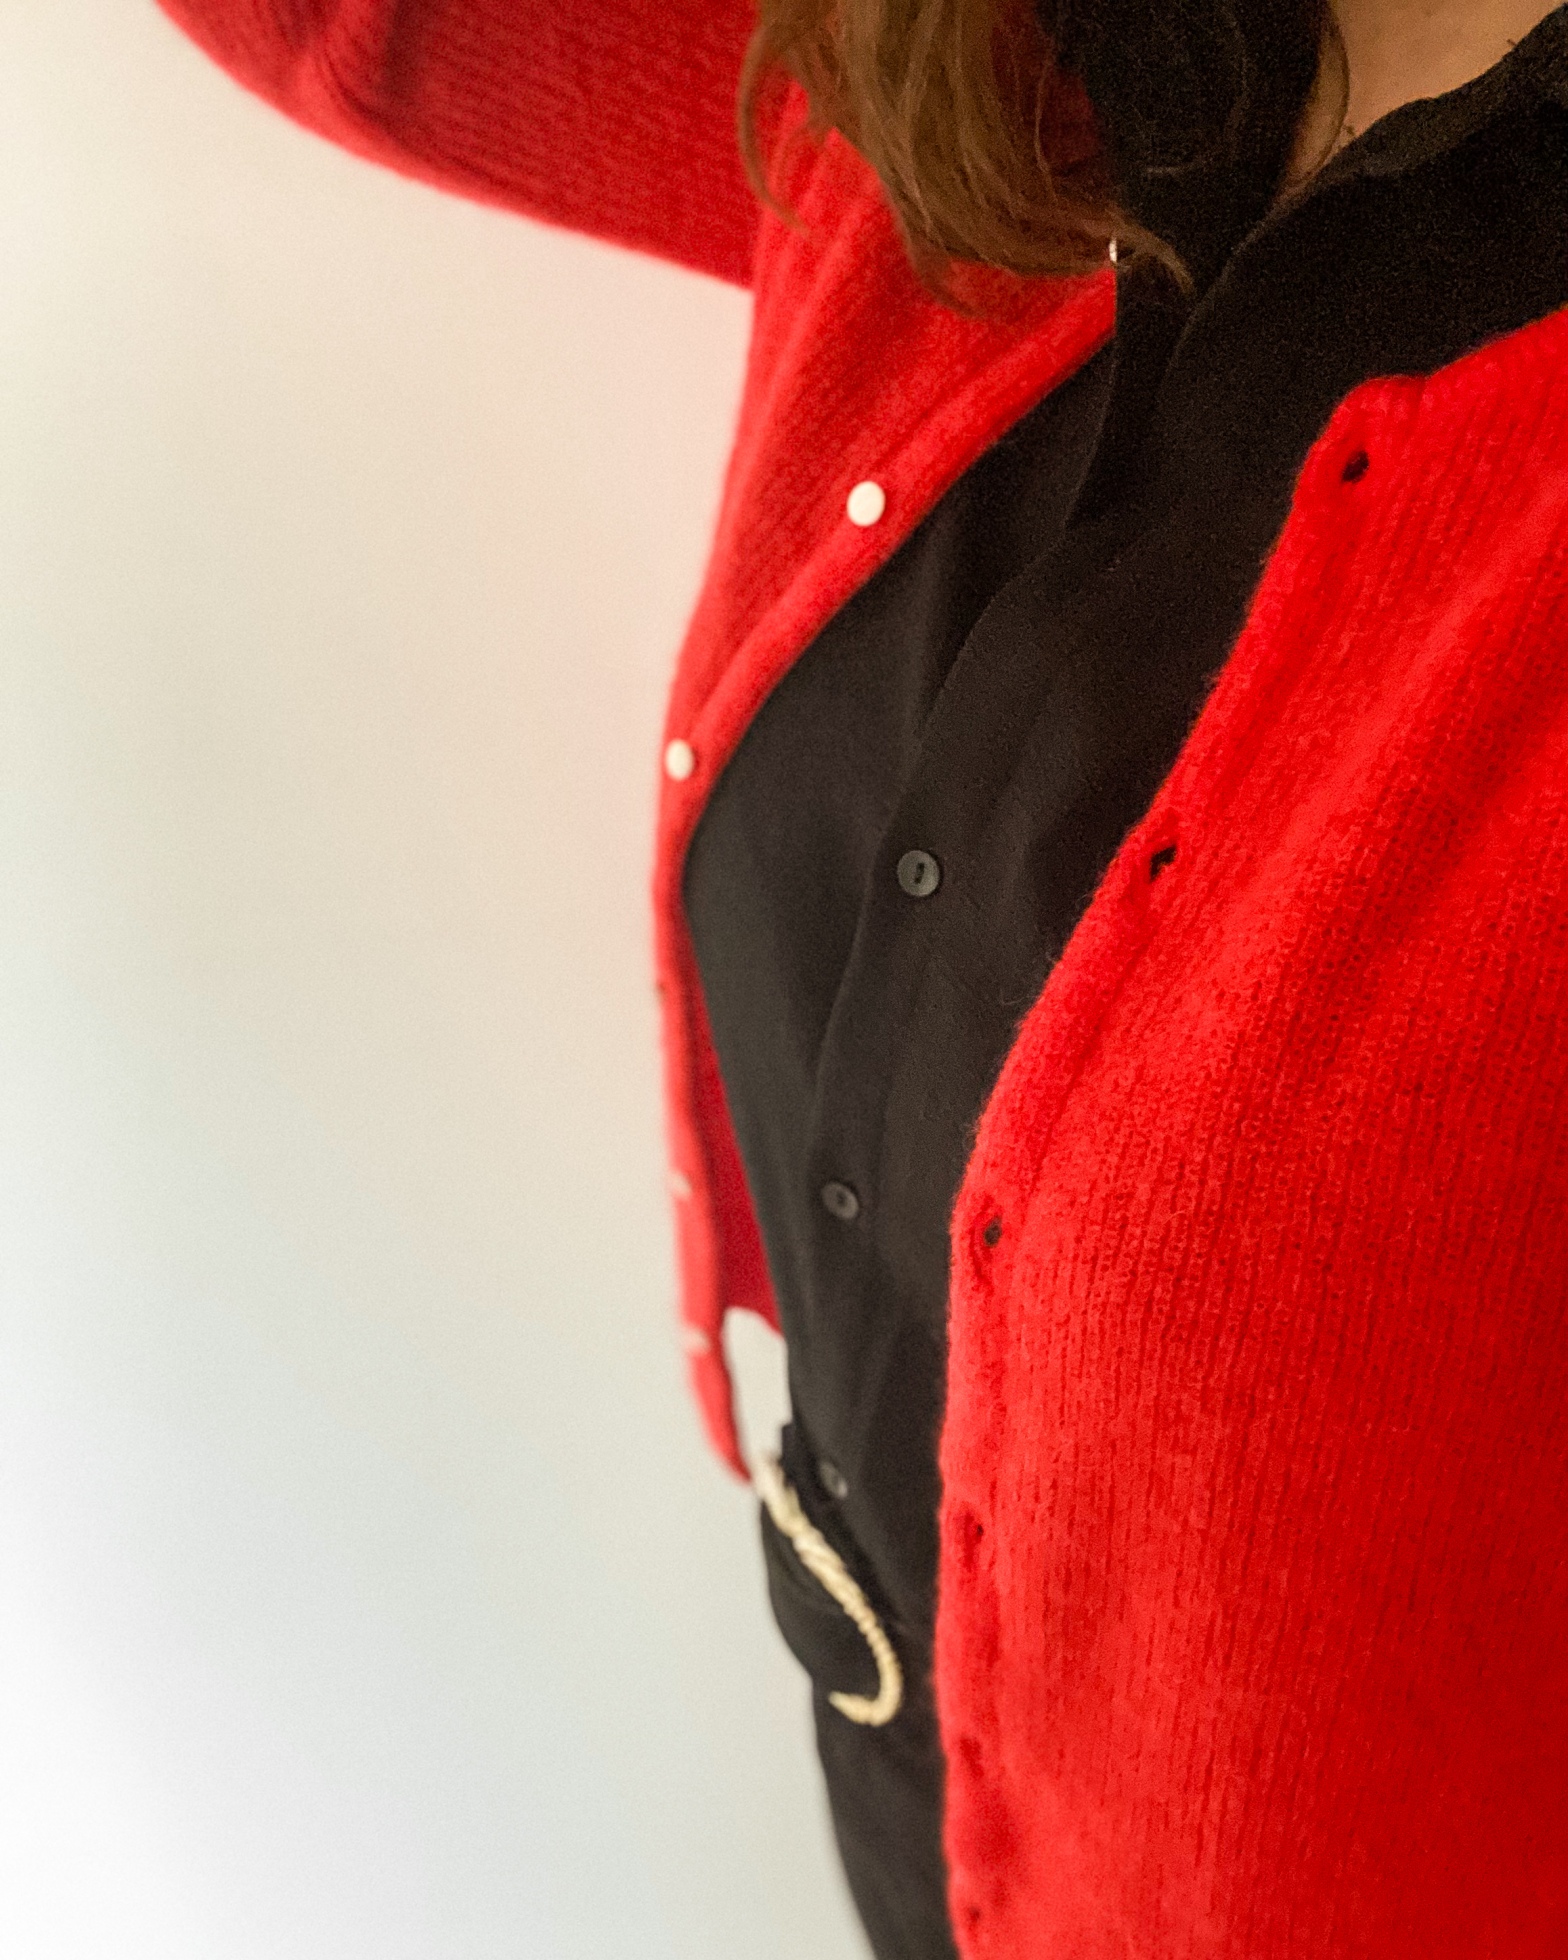 Buste de femme, gilet en laine rouge sur une chemise noire